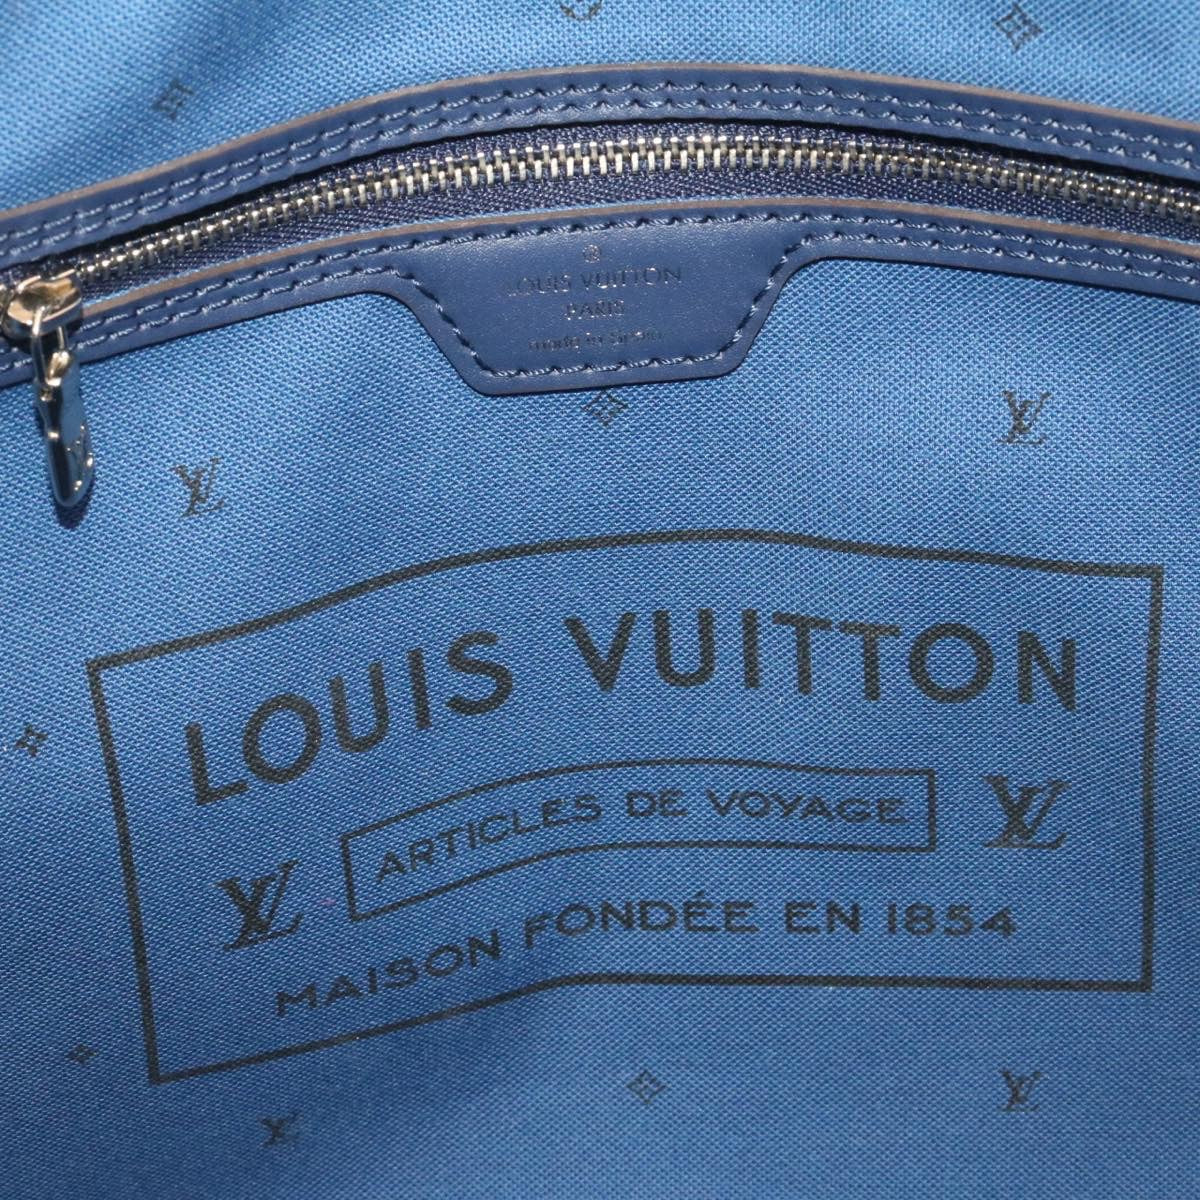 Authentic LOUIS VUITTON LV Escal Neverfull MM M45128 Bag #260-006